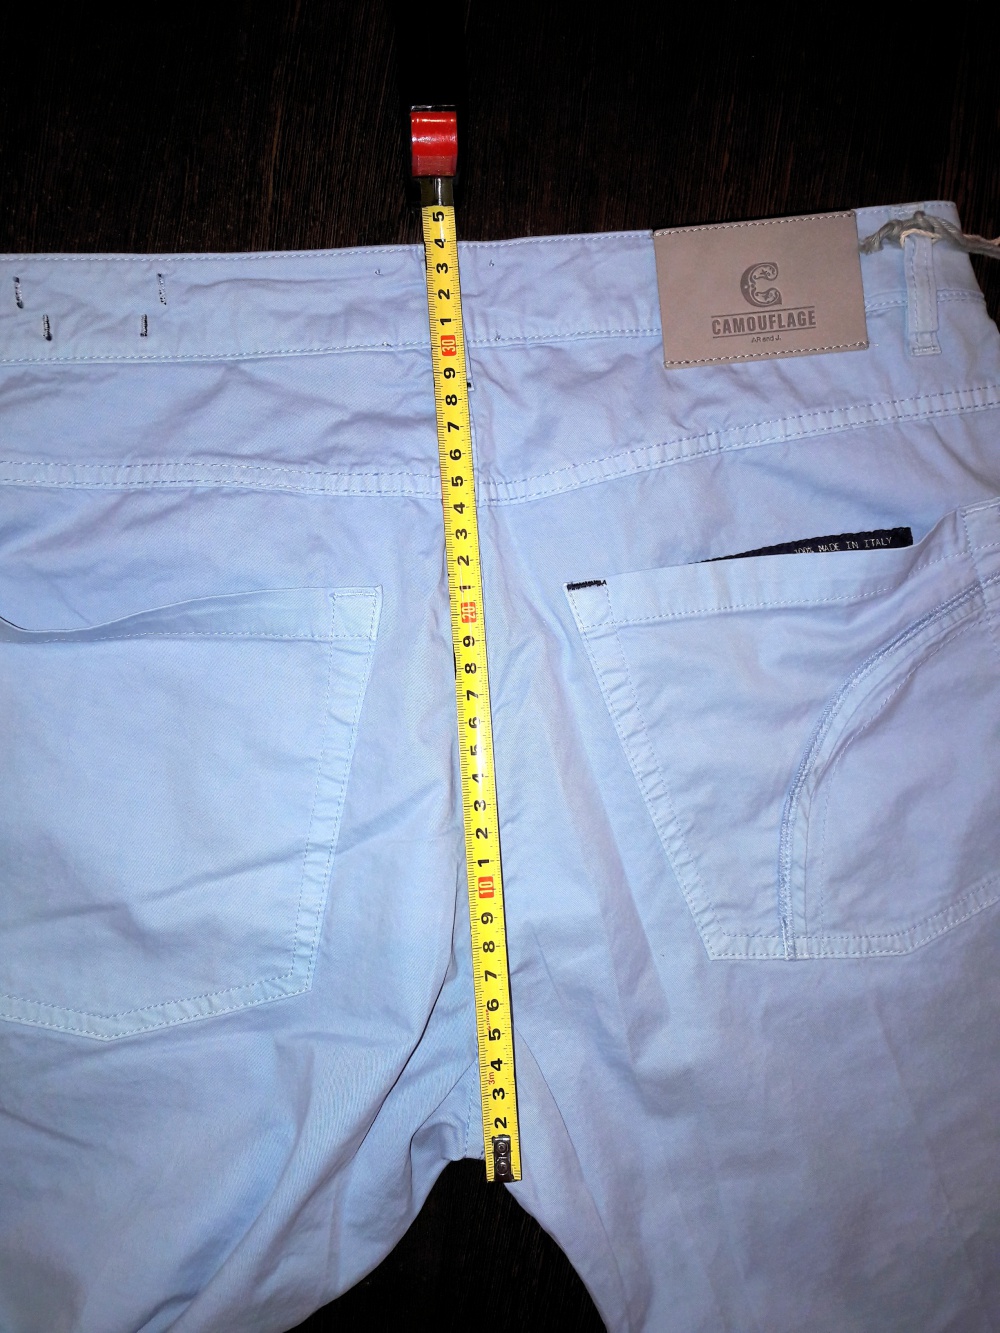 CAMOUFLAGE AR AND J. Джинсовые брюки 36 размер маломерят очень.